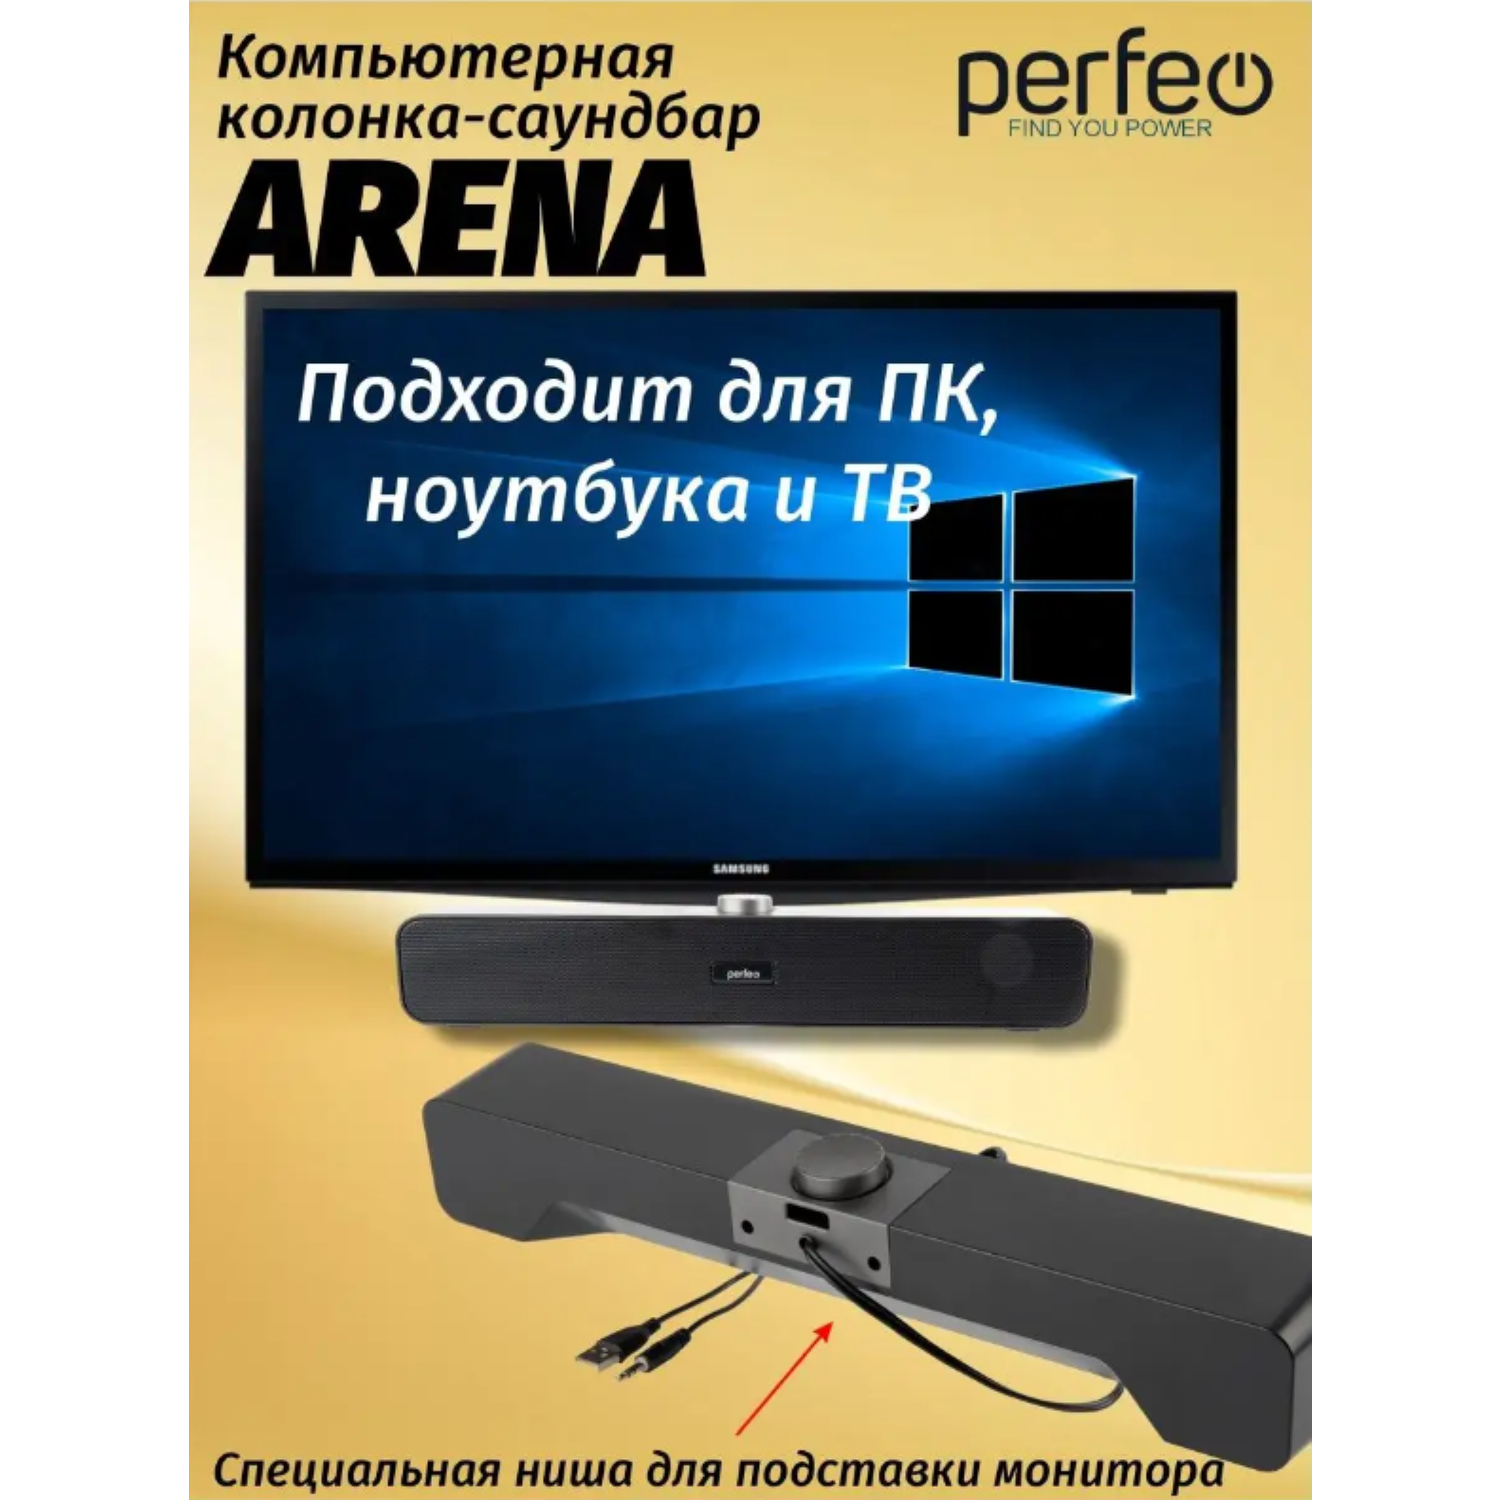 Колонка-саундбар Perfeo компьютерная ARENA мощность 6 Вт USB графит - фото 2